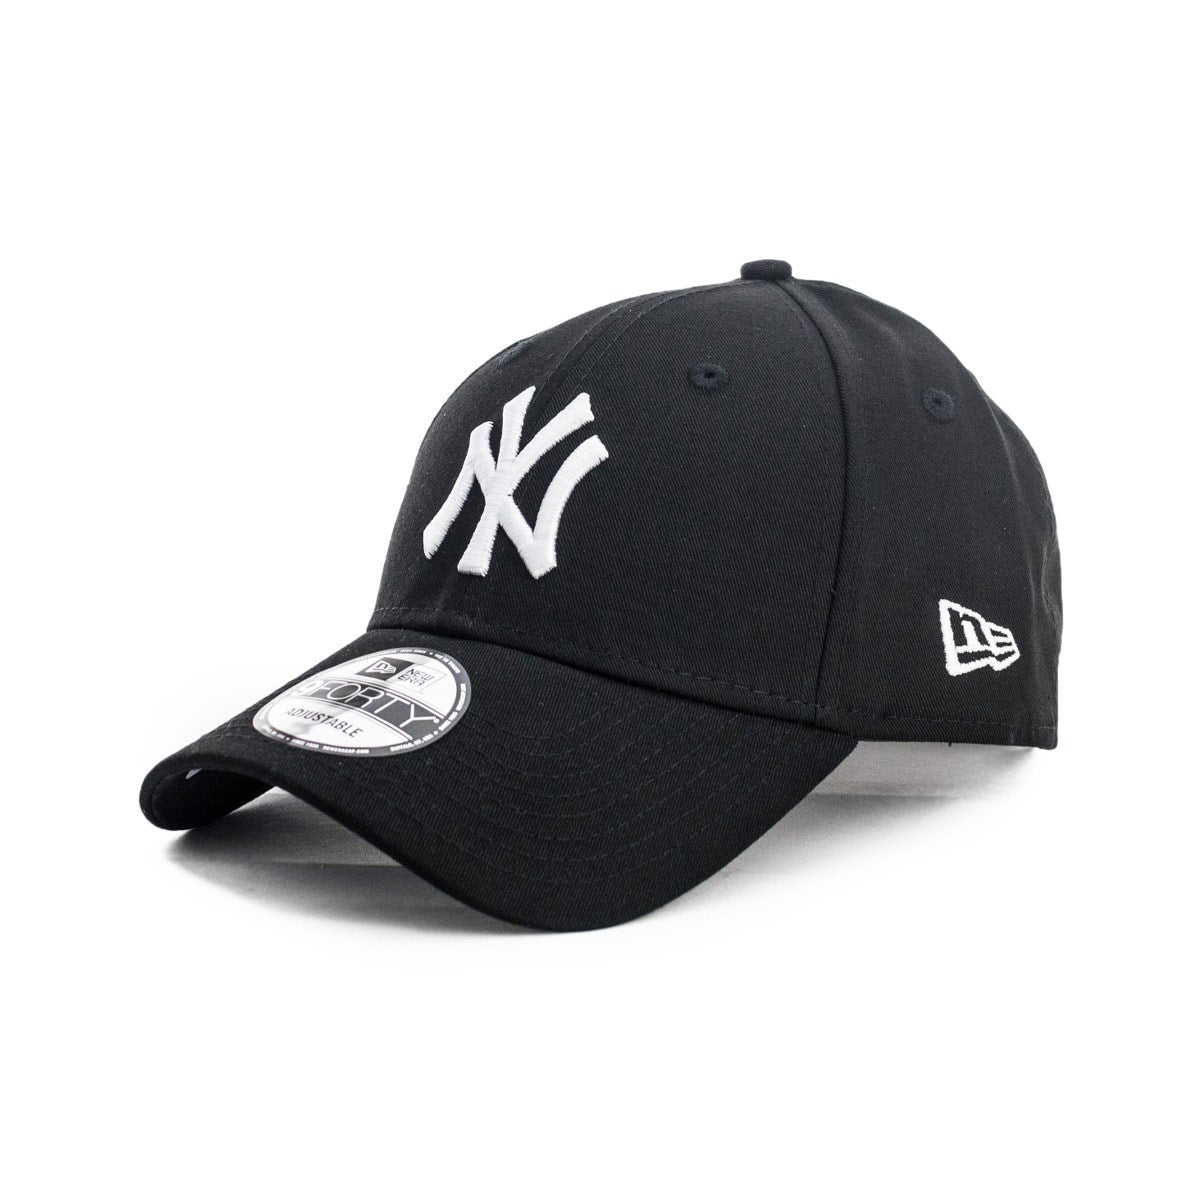 New Era 940 New Brooklyn Basic League Cap 10531941 x – Fashion schwarz-w - York Yankees MLB Footwear